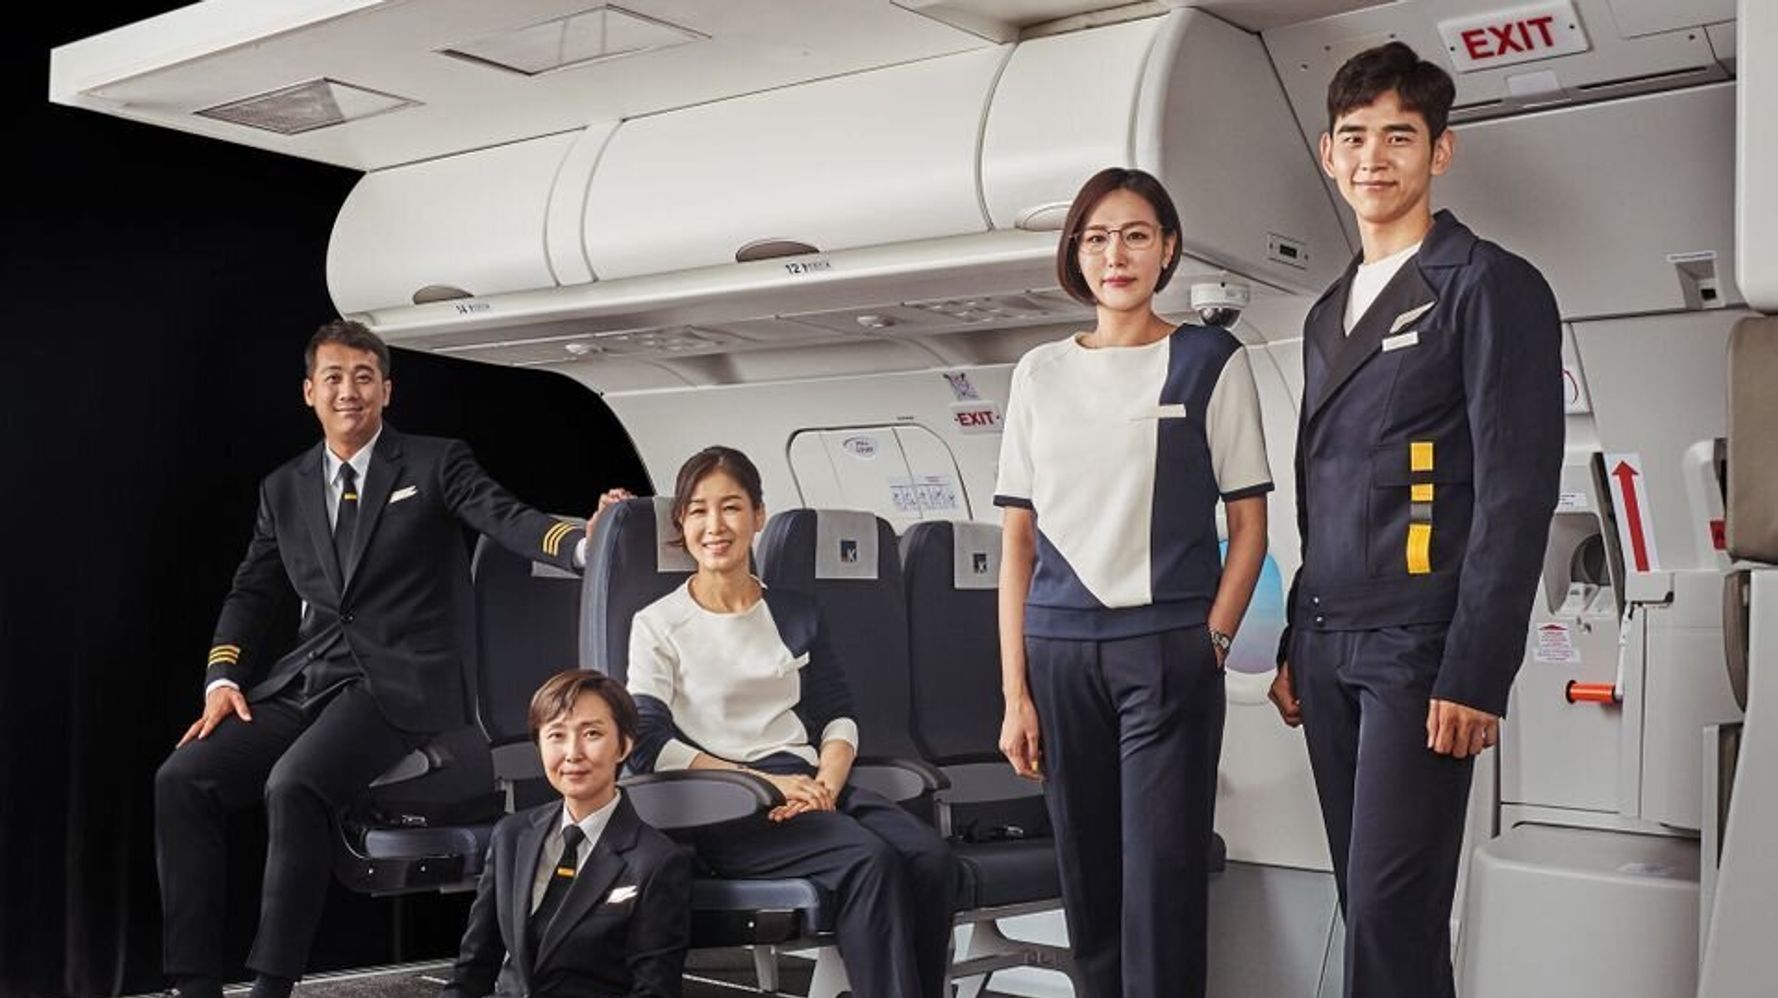 ジェンダーレス 制服を導入した韓国航空会社が反響呼ぶ 誕生の理由を聞いた ハフポスト